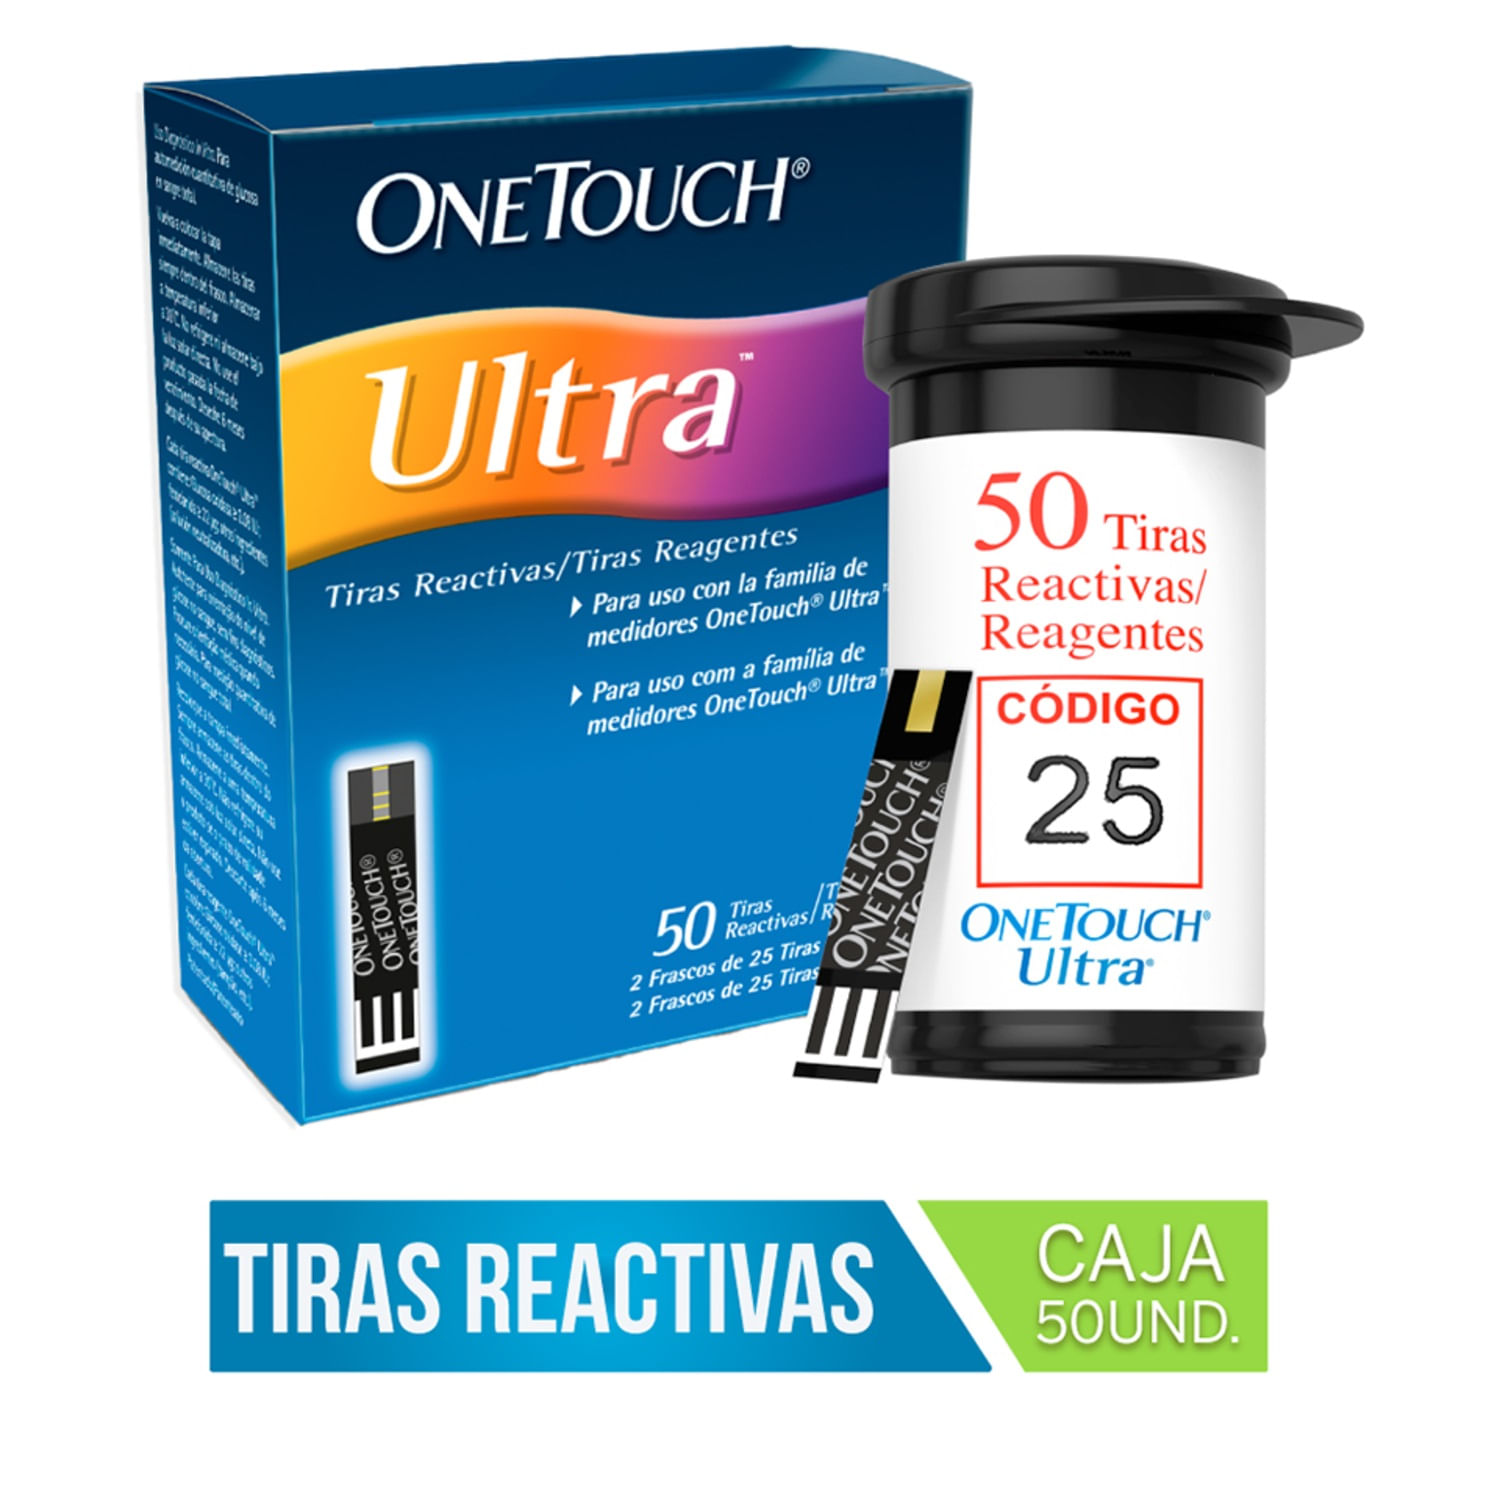 Tiras Reactivas One Touch Ultra Caja 50 UND